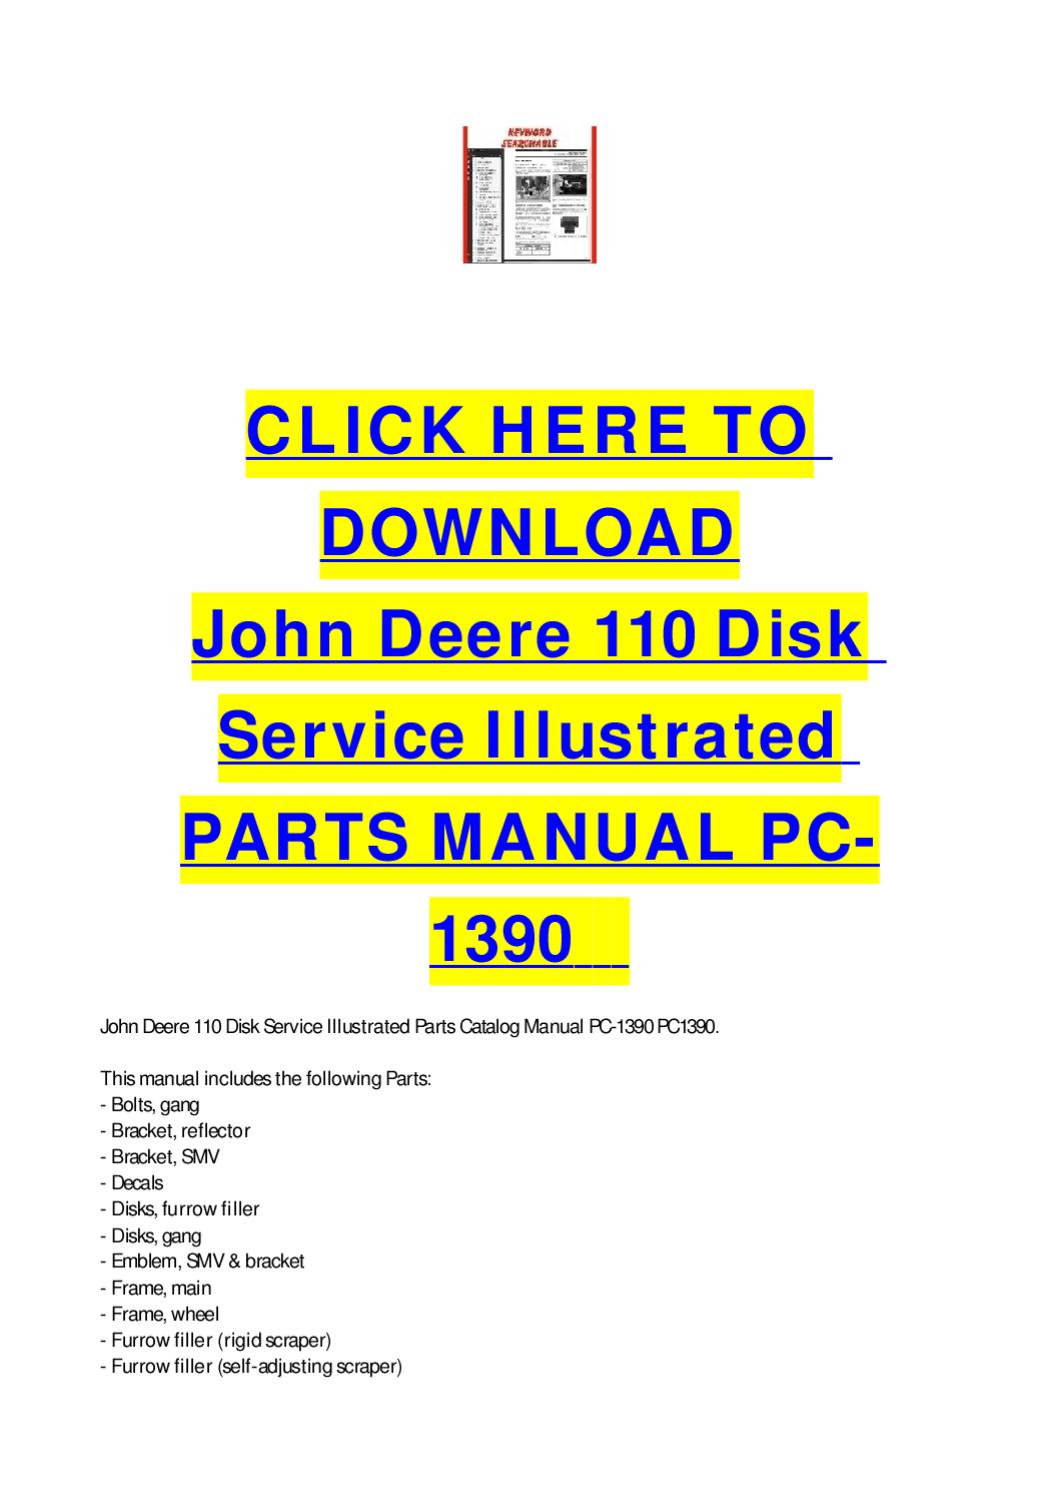 John deere 110 service manual download